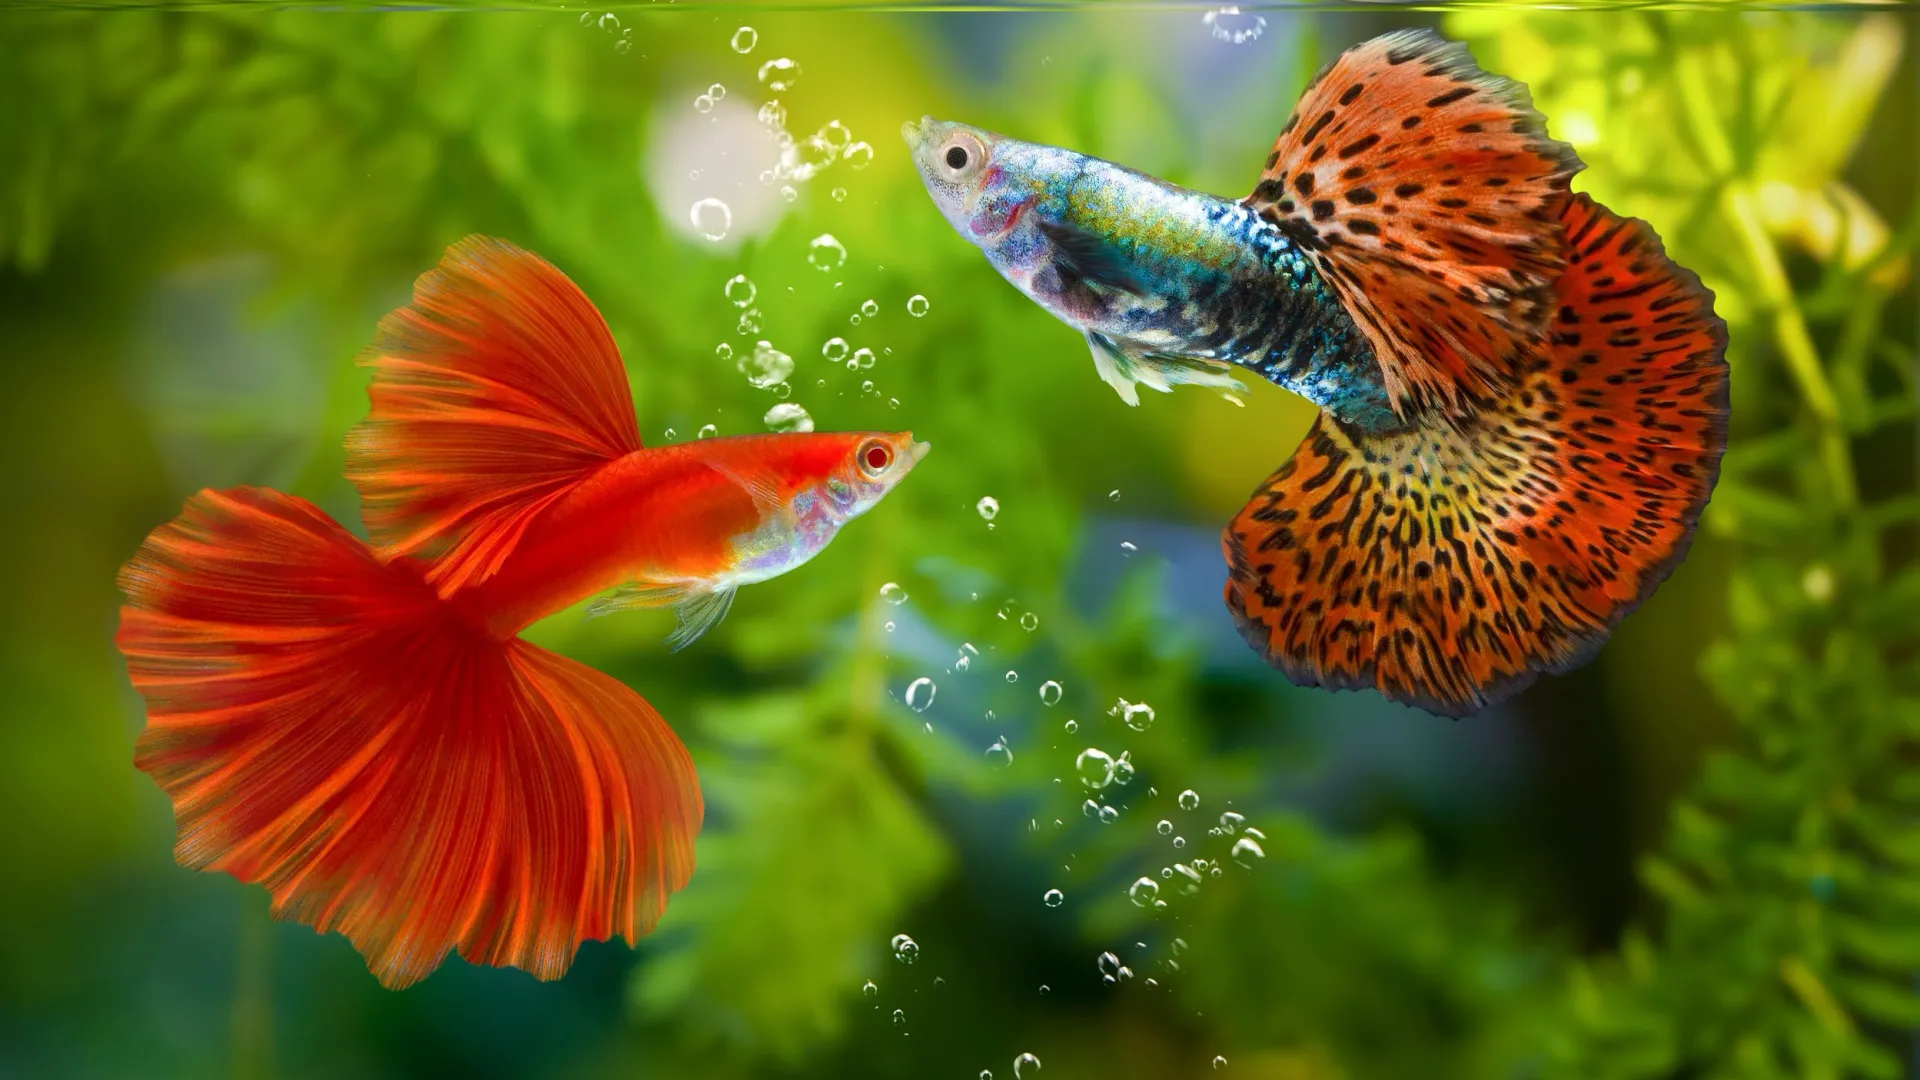 С помощью ярко-красной окраски рыбки привлекают к себе внимание противоположного пола. Фото: panpilai paipa / Shutterstock / Fotodom